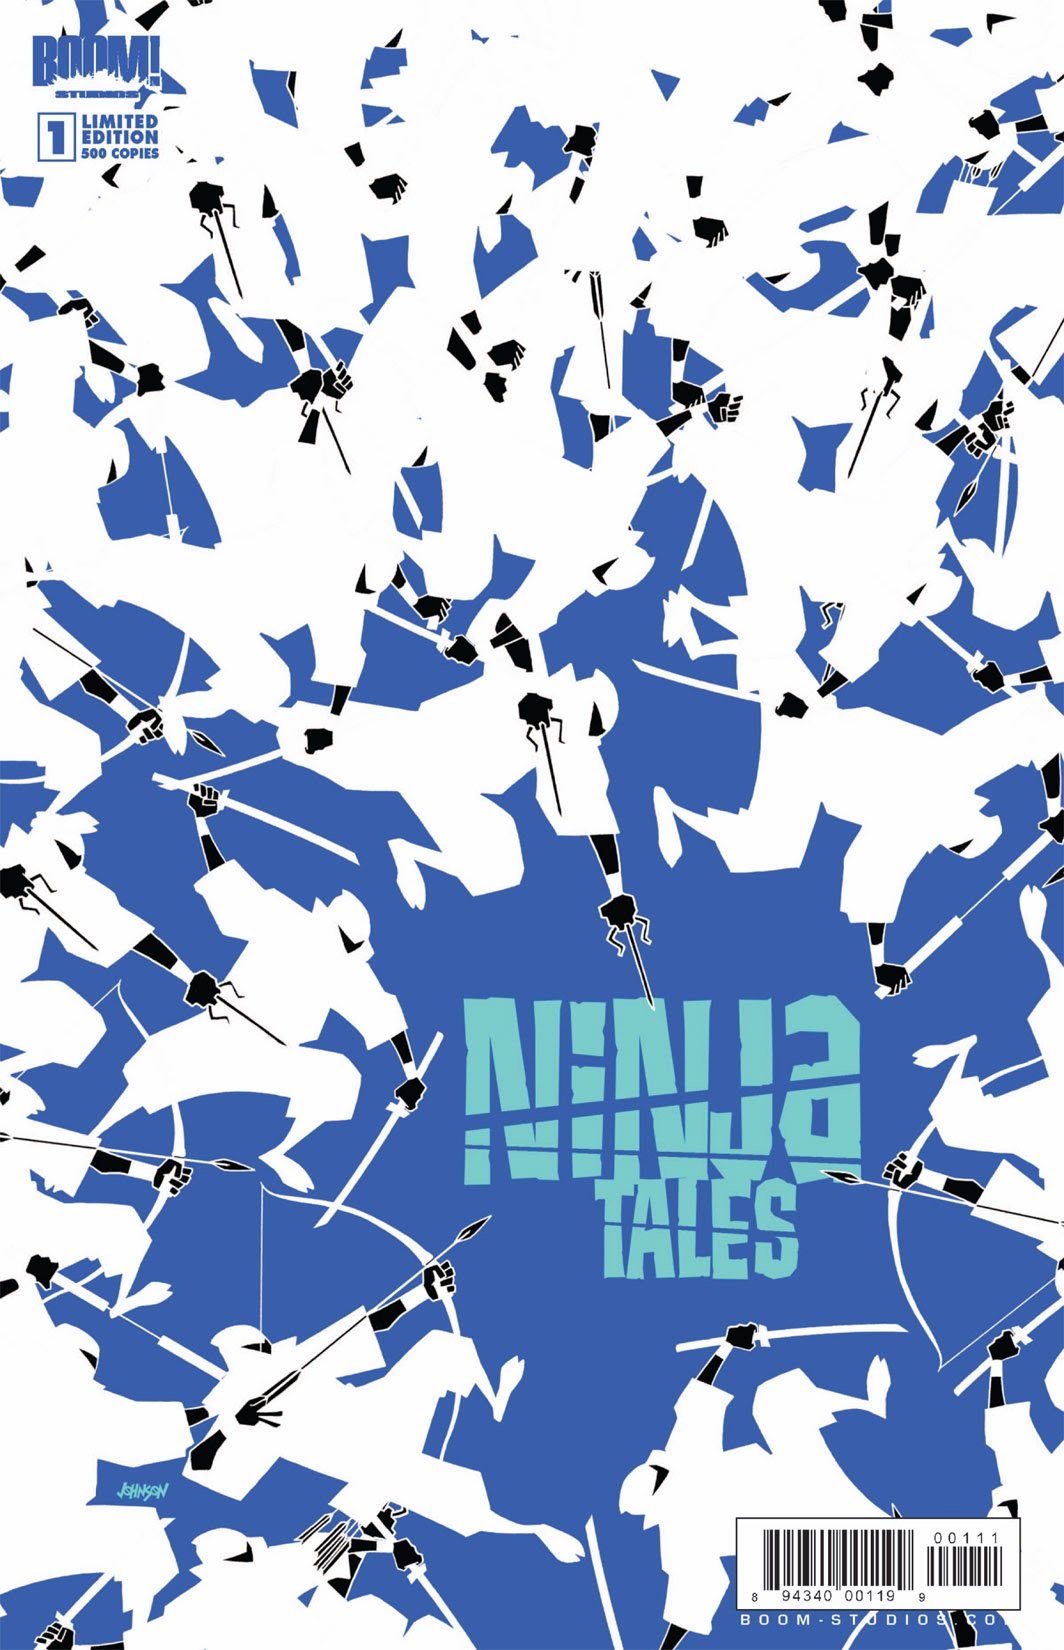 Read online Ninja Tales comic -  Issue #1 - 2